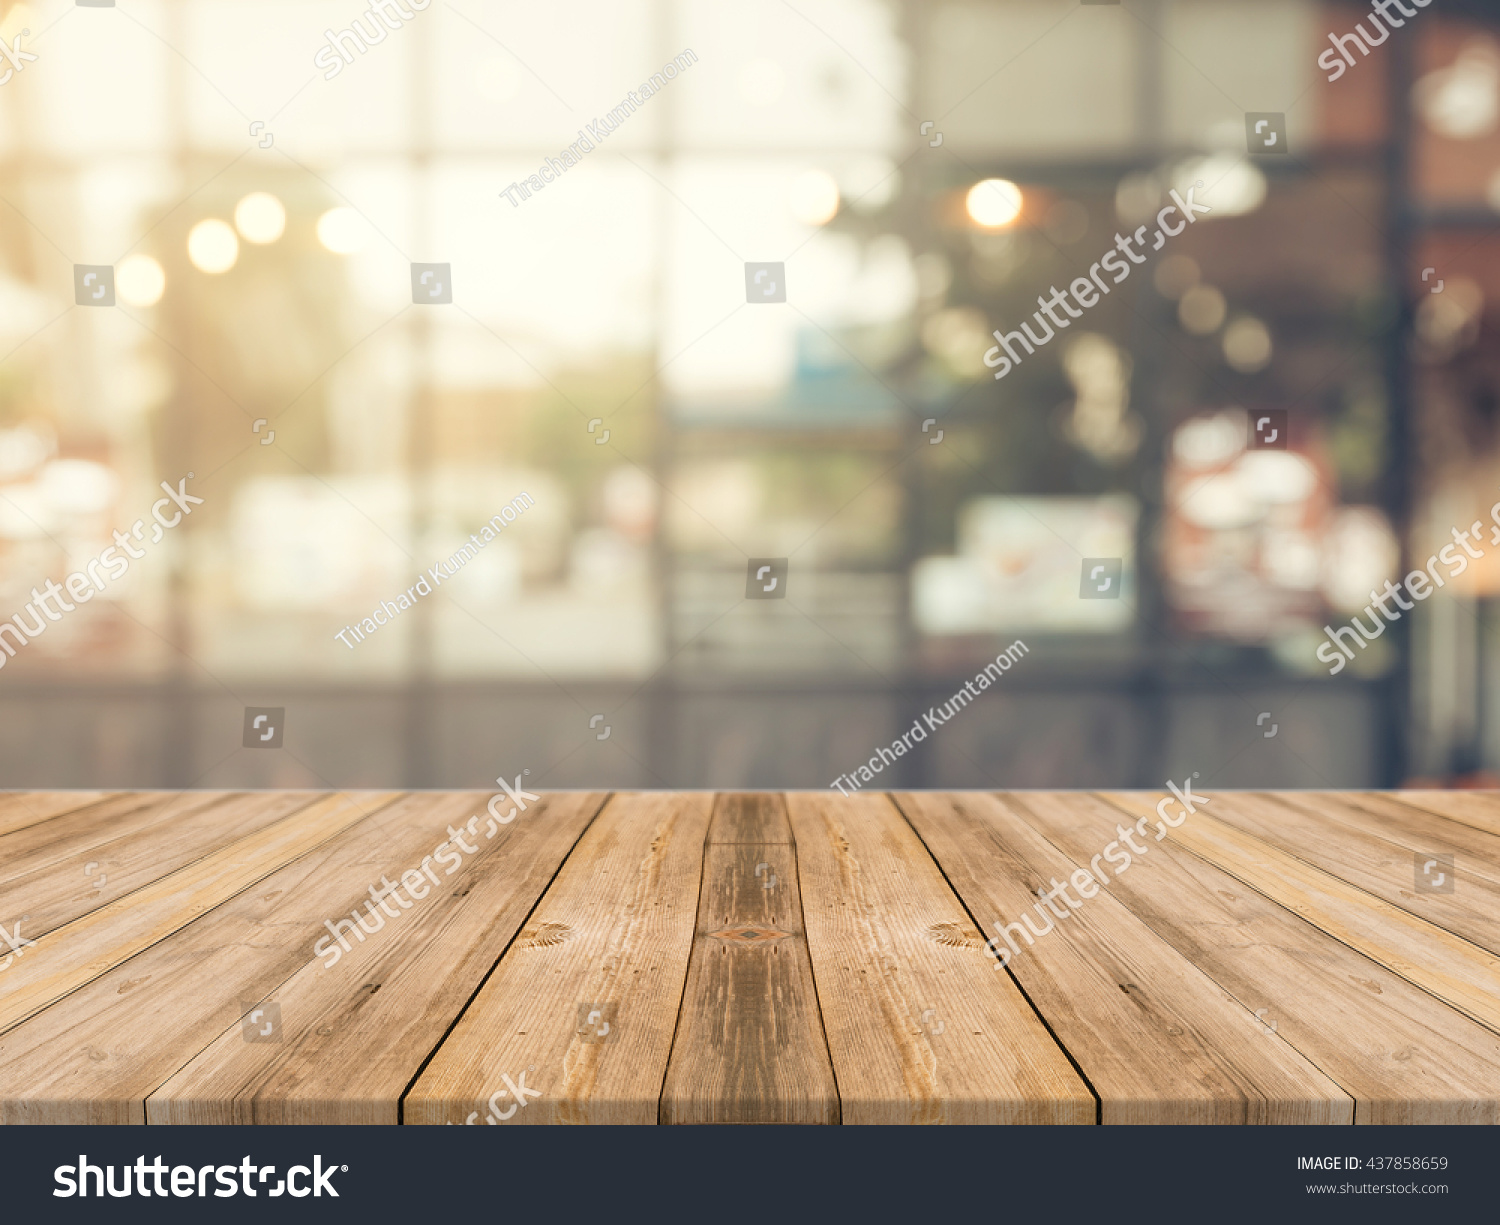 Dřevěná deska prázdný stůl před rozmazaným pozadím. Perspektiva hnědé dřevo přes rozostření v kavárně - lze použít pro zobrazení nebo montáž vašich výrobků.Zesměňte se pro zobrazení produktu. #437858659